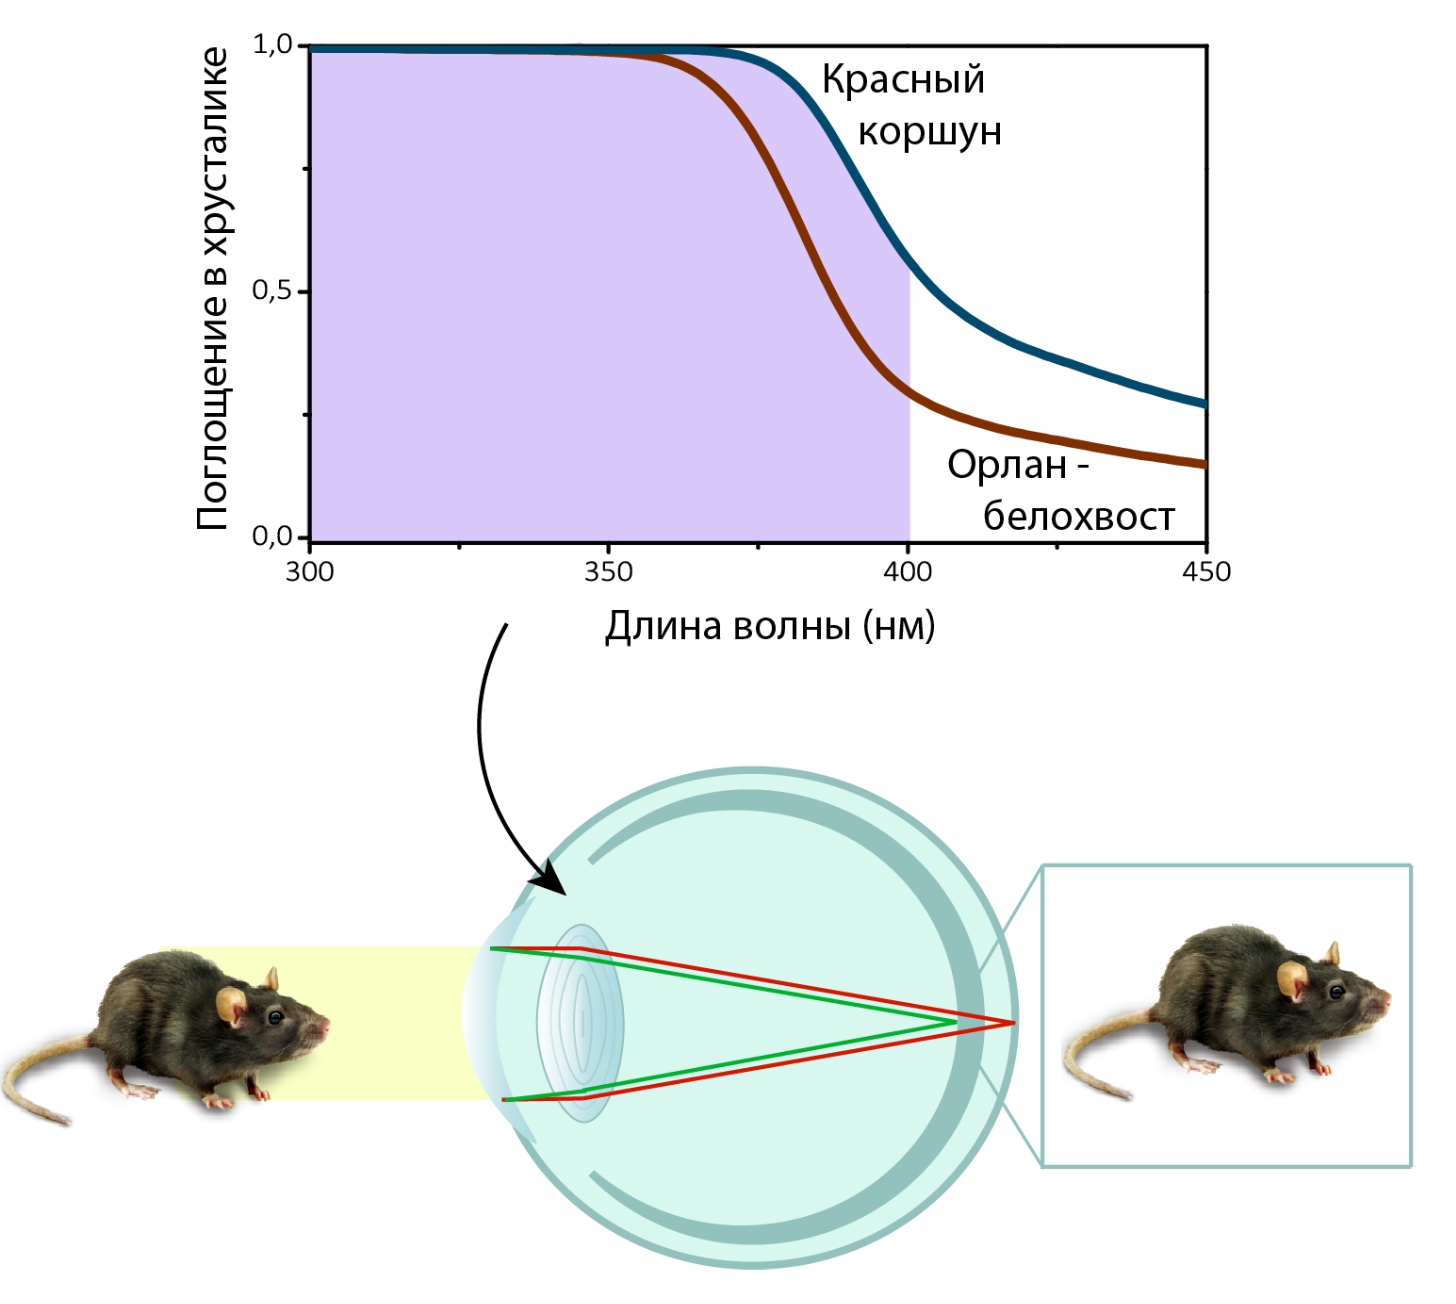 Компенсация хроматических аберраций при формировании изображения мыши на сетчатке птиц за счет поглощения УФ в хрусталике